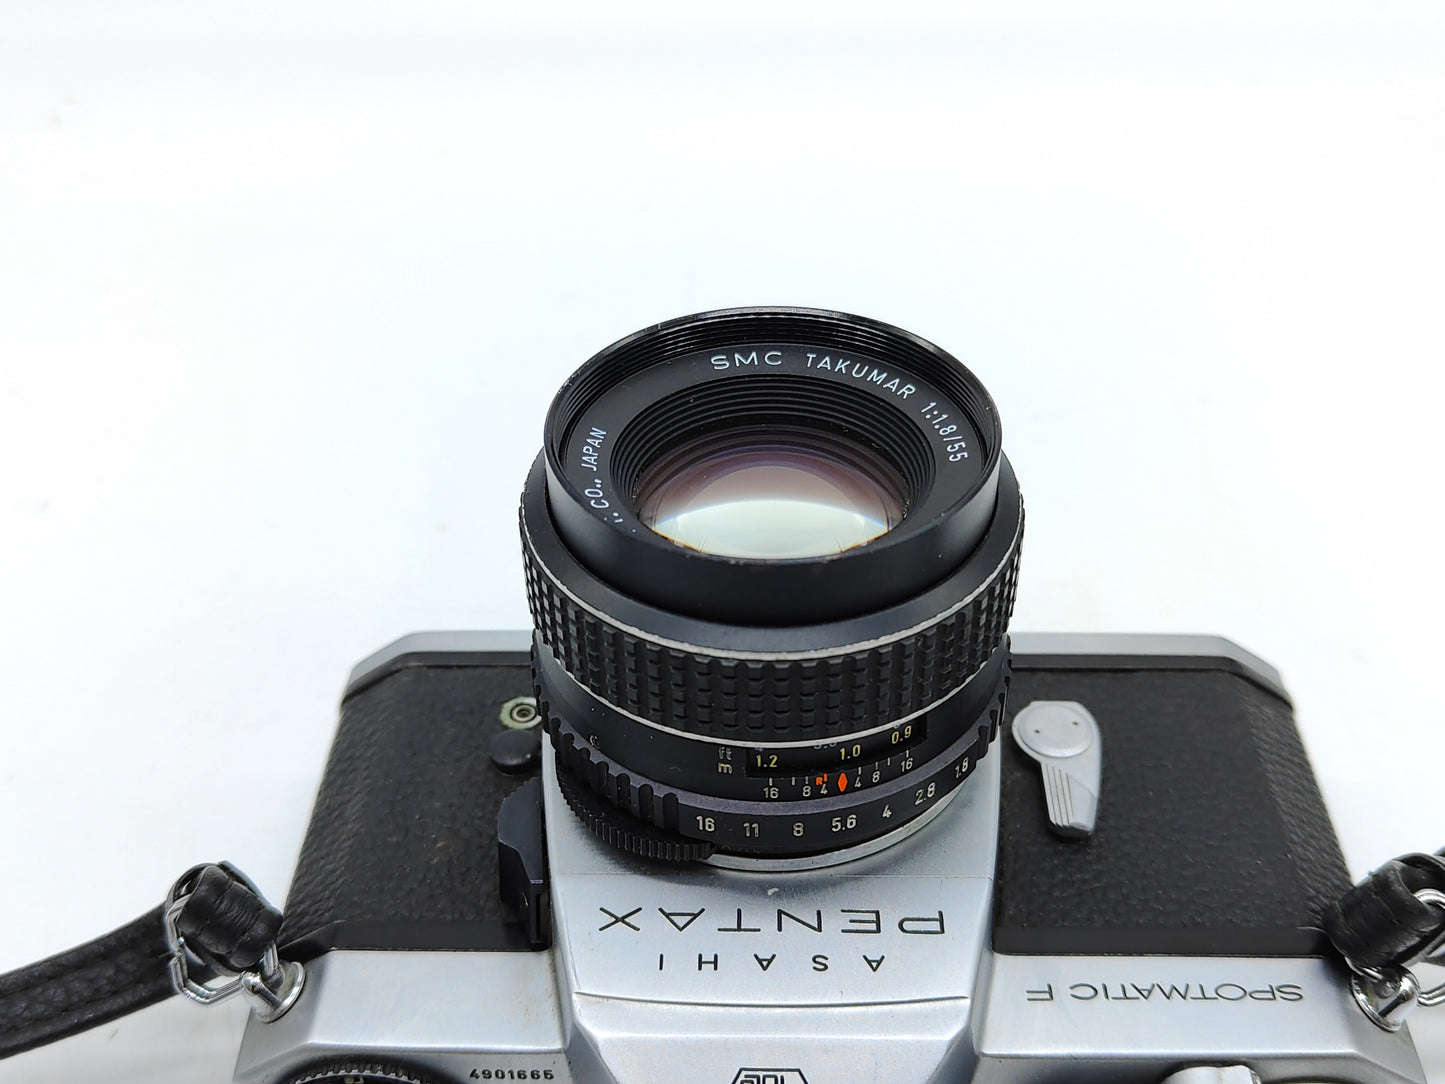 Pentax Spotmatic F SLR film camera + 55mm f/1.8